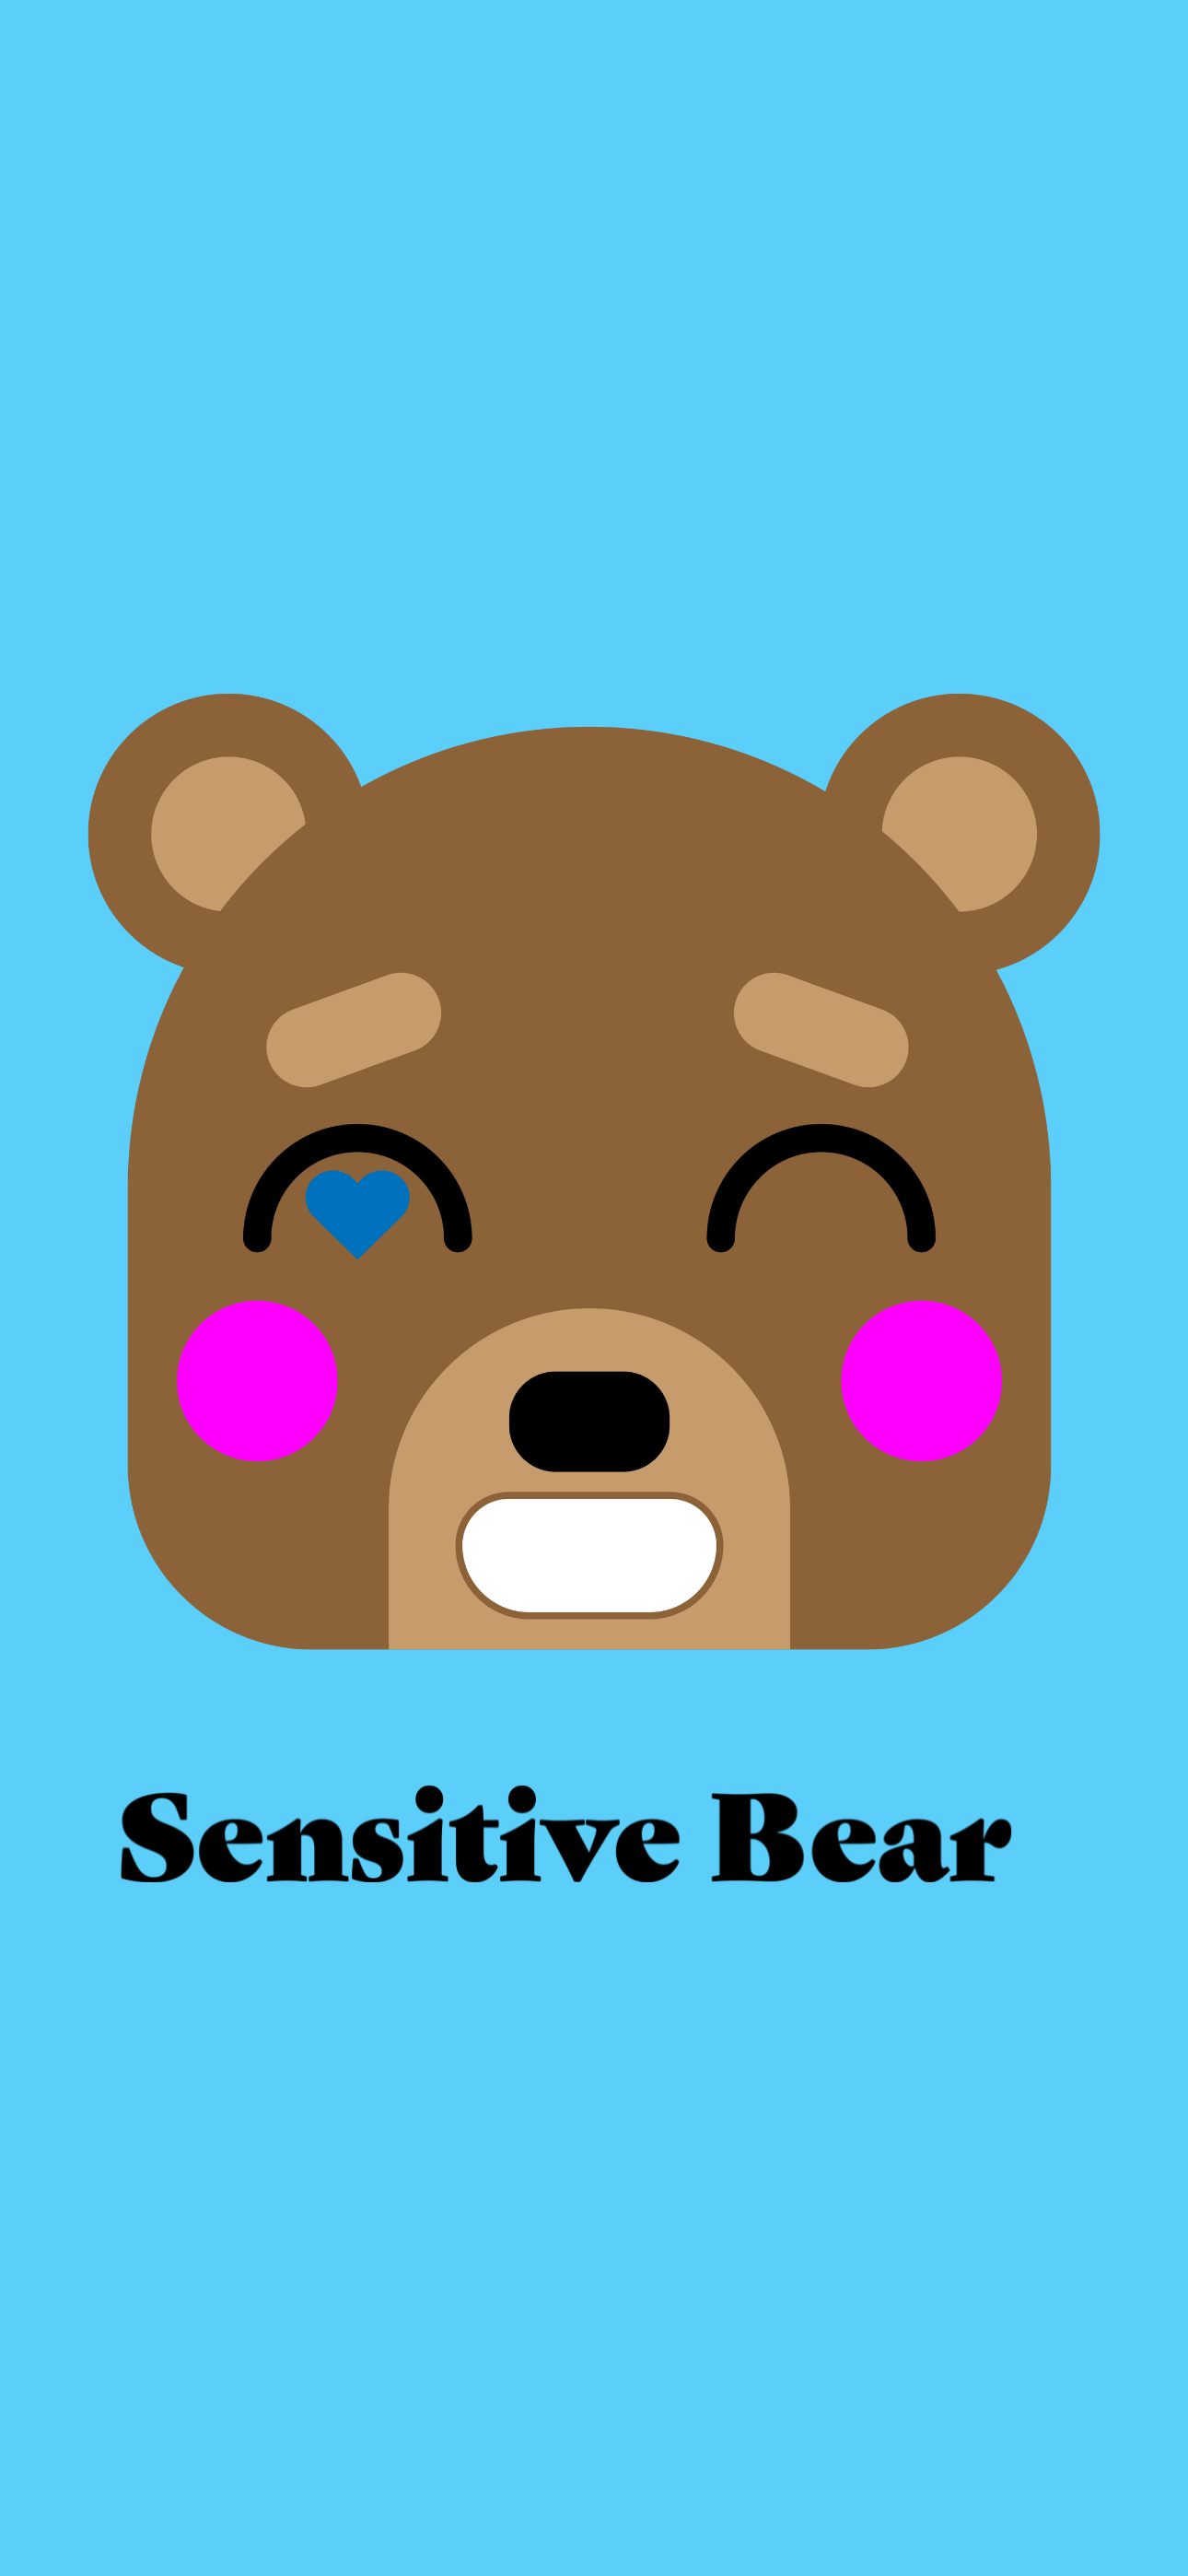 sensitive bear fun colors logo iPhone wallpaper